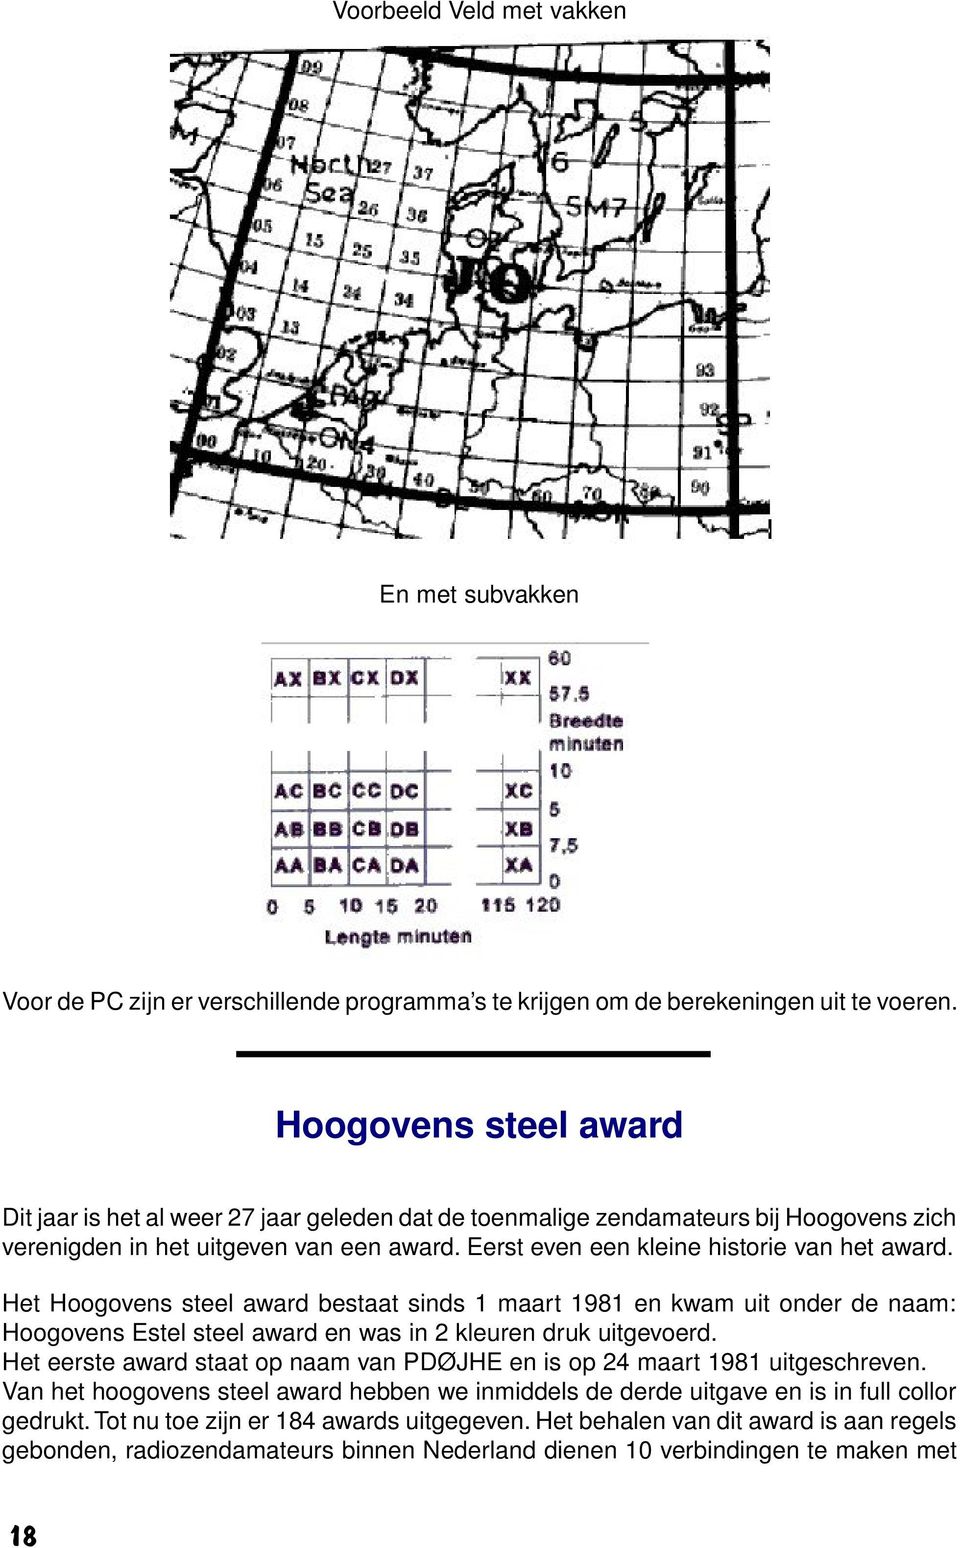 Het Hoogovens steel award bestaat sinds 1 maart 1981 en kwam uit onder de naam: Hoogovens Estel steel award en was in 2 kleuren druk uitgevoerd.